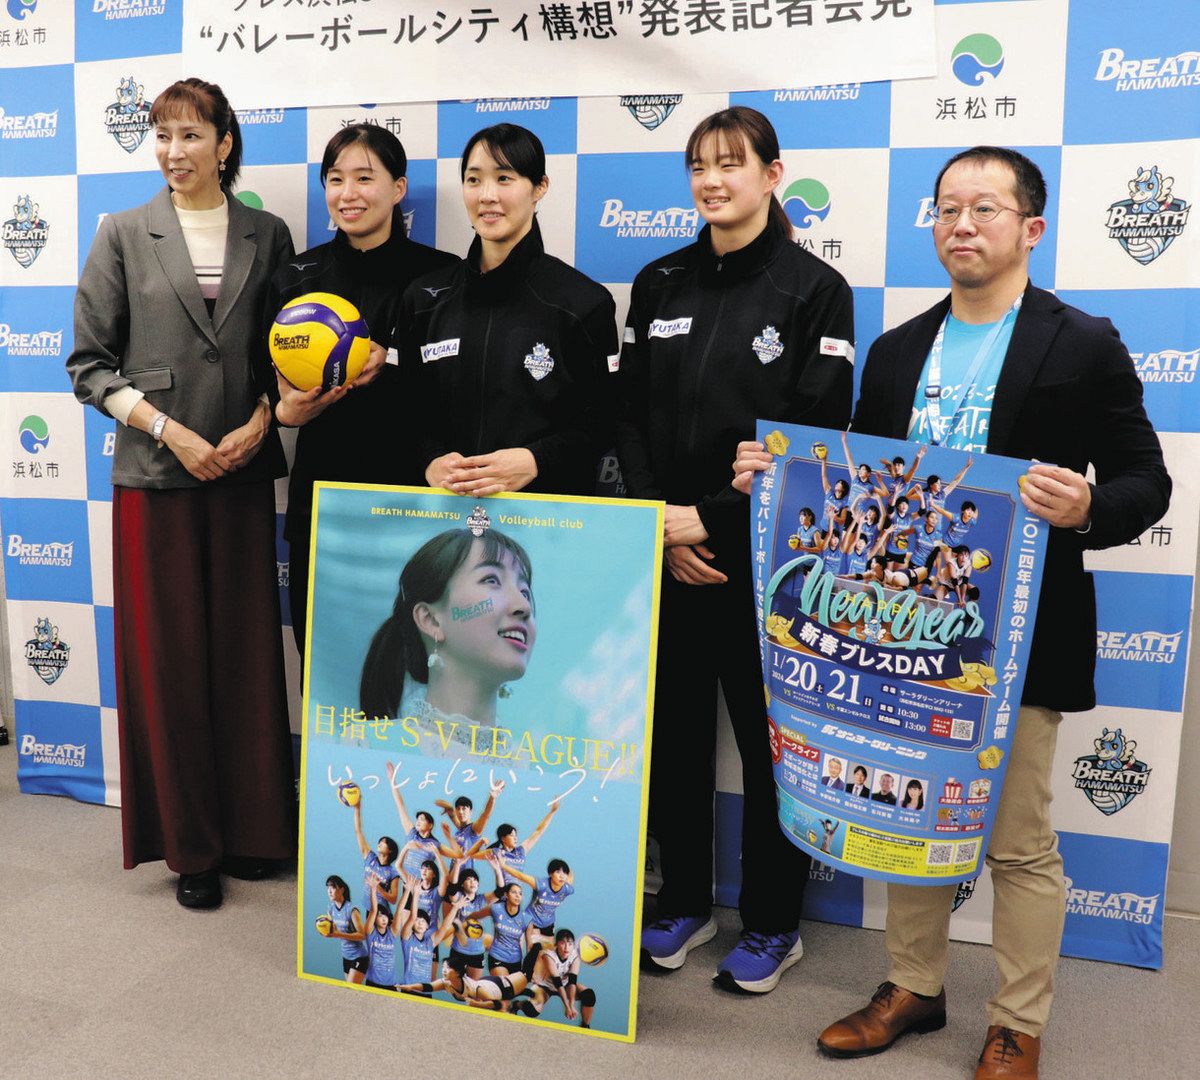 バレーボールシティ構想を発表したブレス浜松の大林素子さん（左）ら＝浜松市役所で
